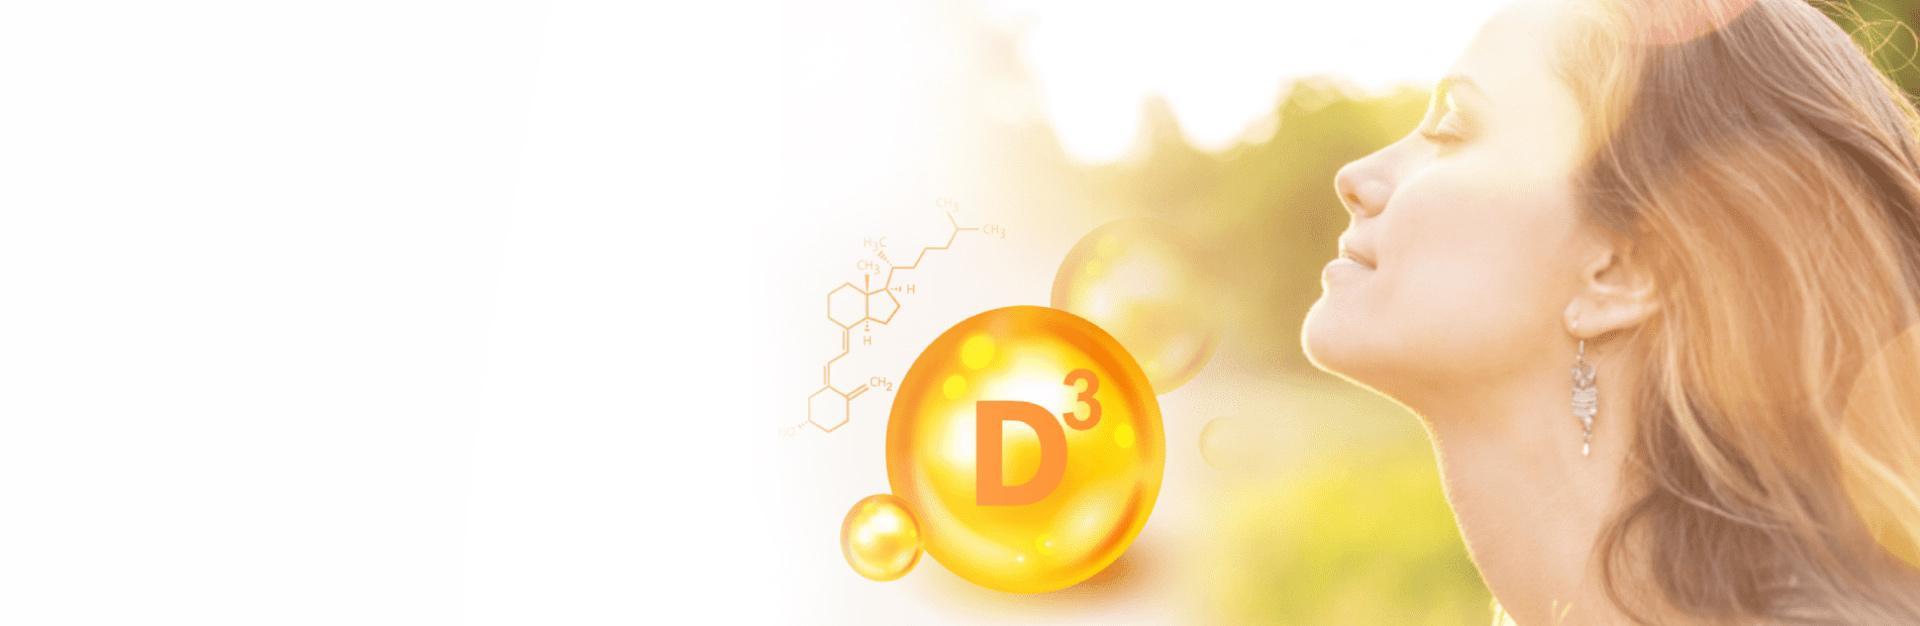 Le rôle de la vitamine D dans l'immunité SLIDE BE FR